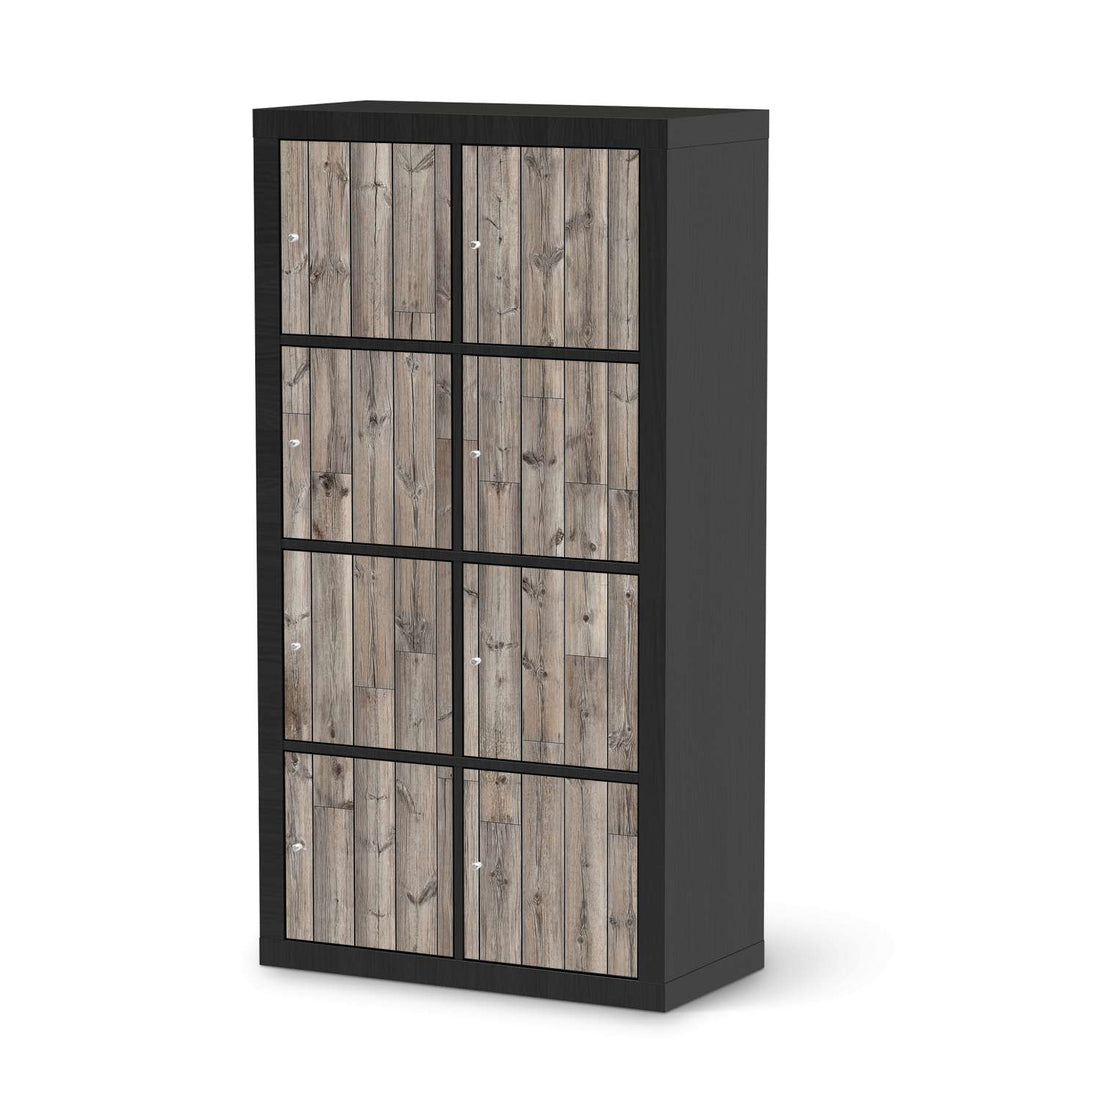 Folie für Möbel Dark washed - IKEA Kallax Regal 8 Türen - schwarz